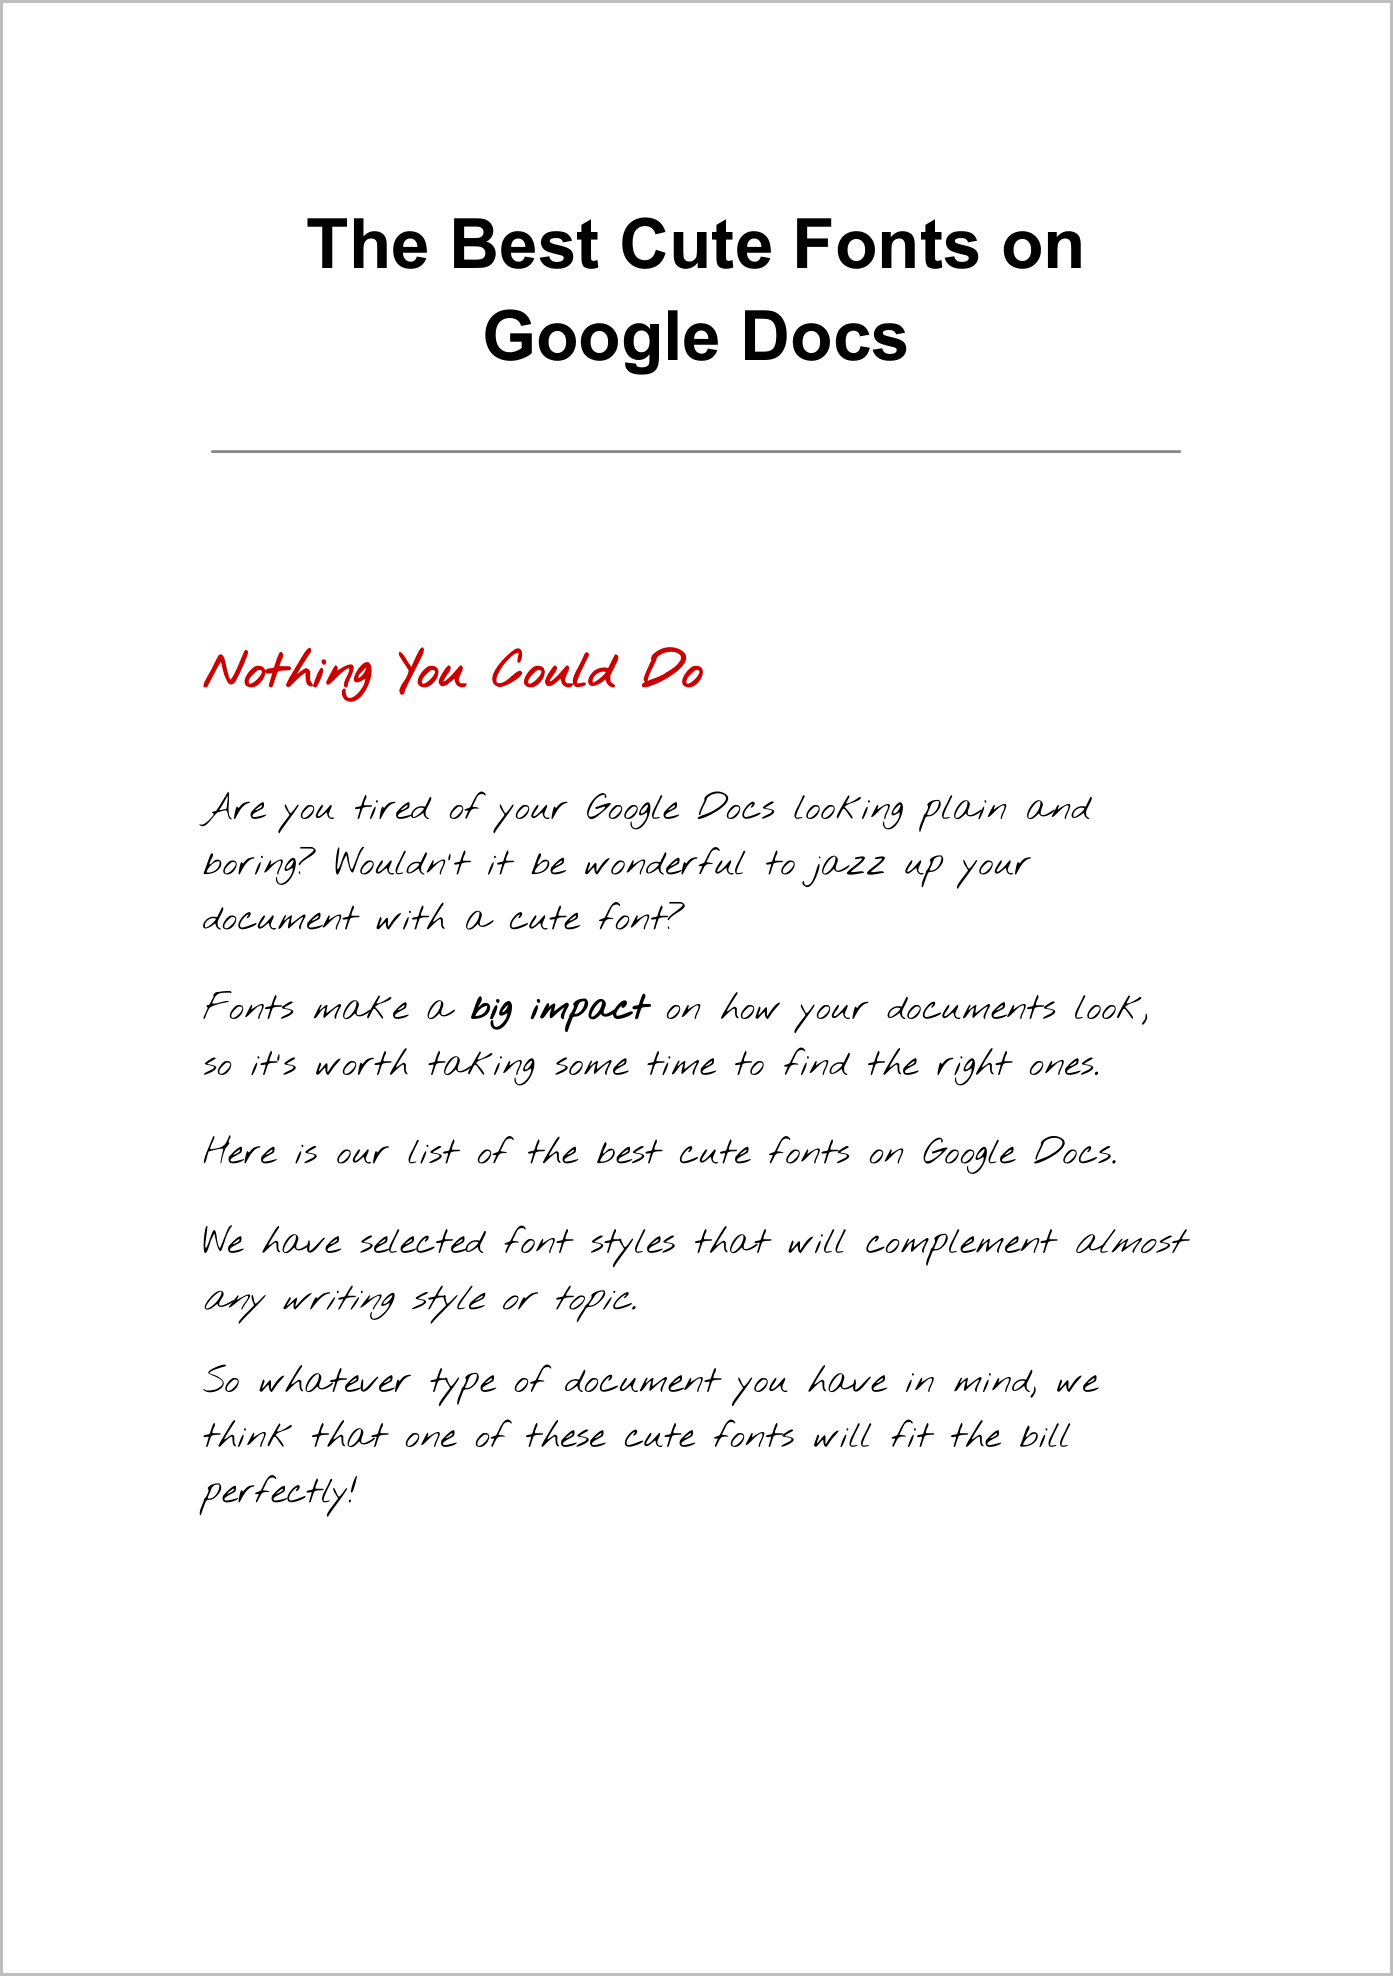 Cute Fonts on Google Docs